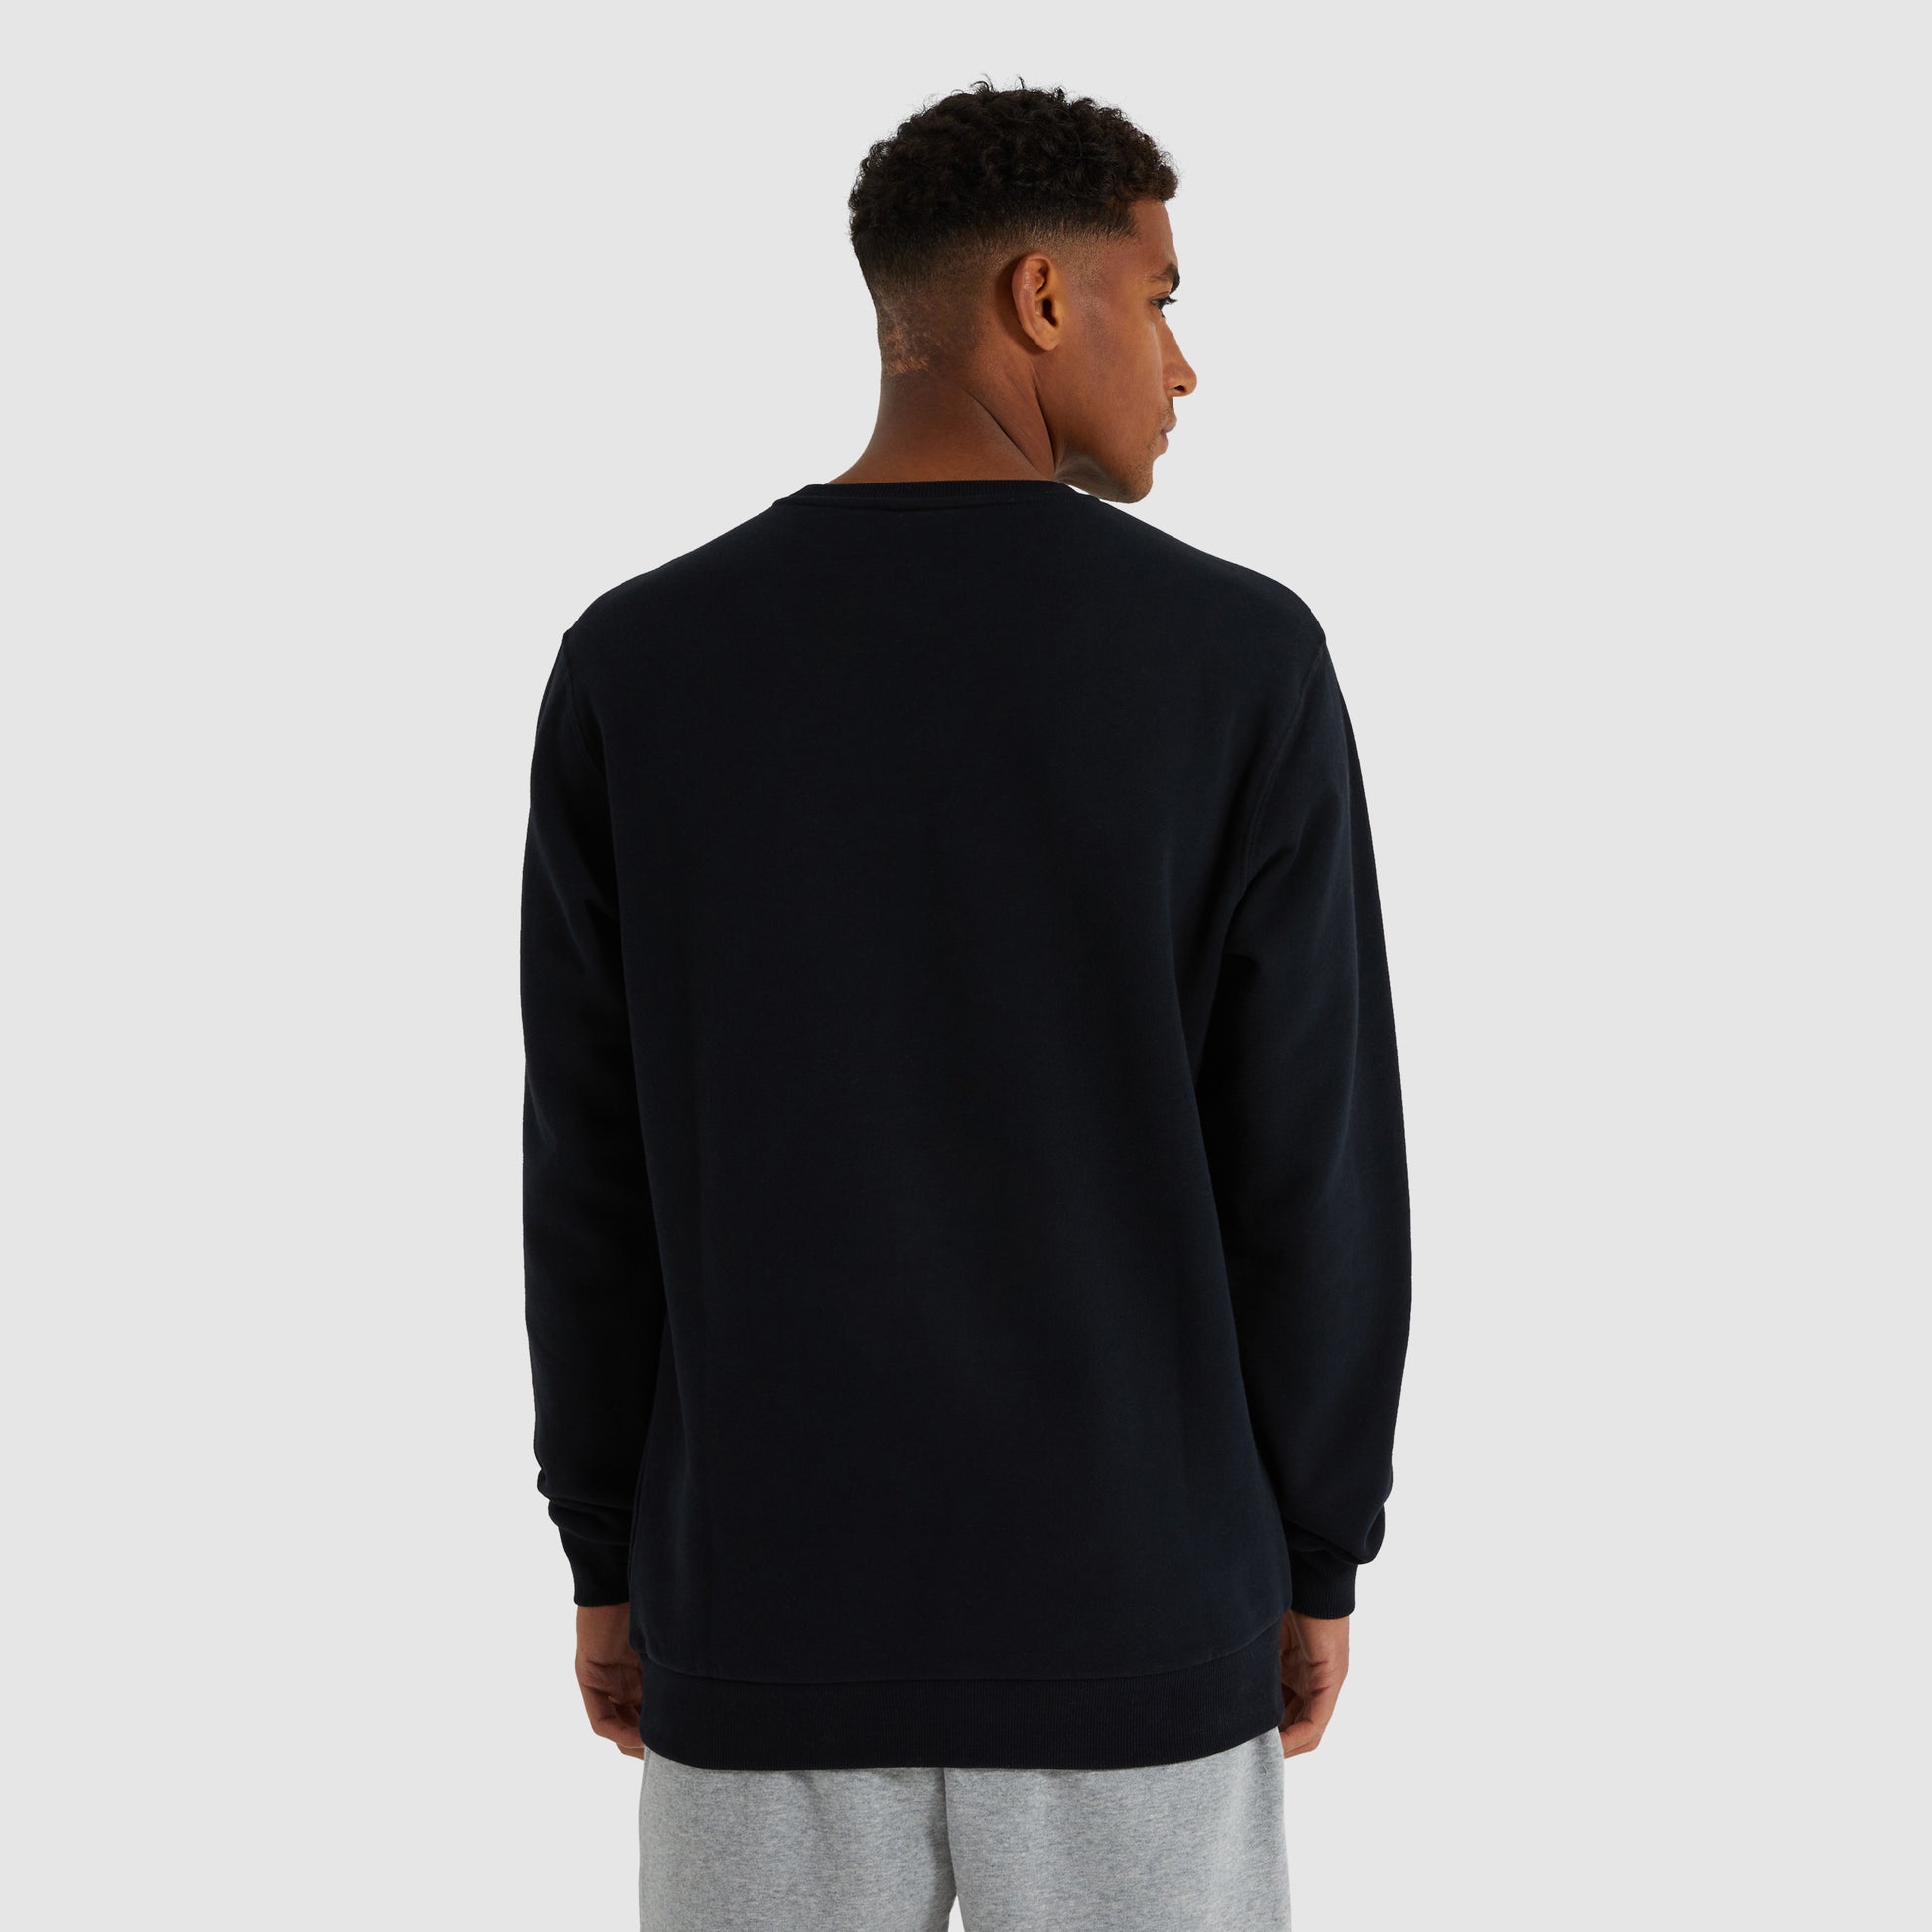 Buy Ellesse men crew neck brand logo long sleeves sweatshirts black Online